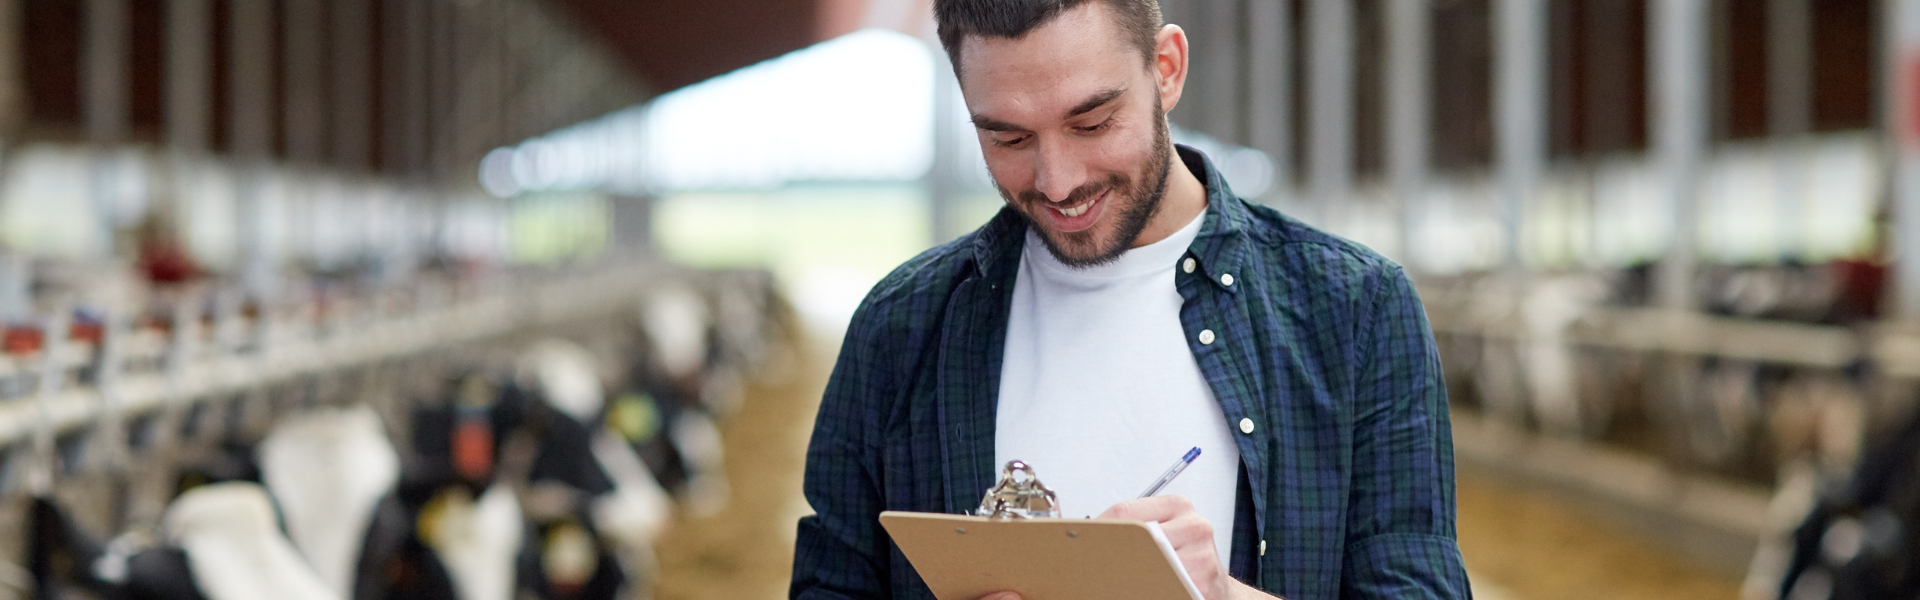 Na sliki je posameznik, ki opravlja oceno ali pregled na mlečni farmi, obkrožen z vrstami krav